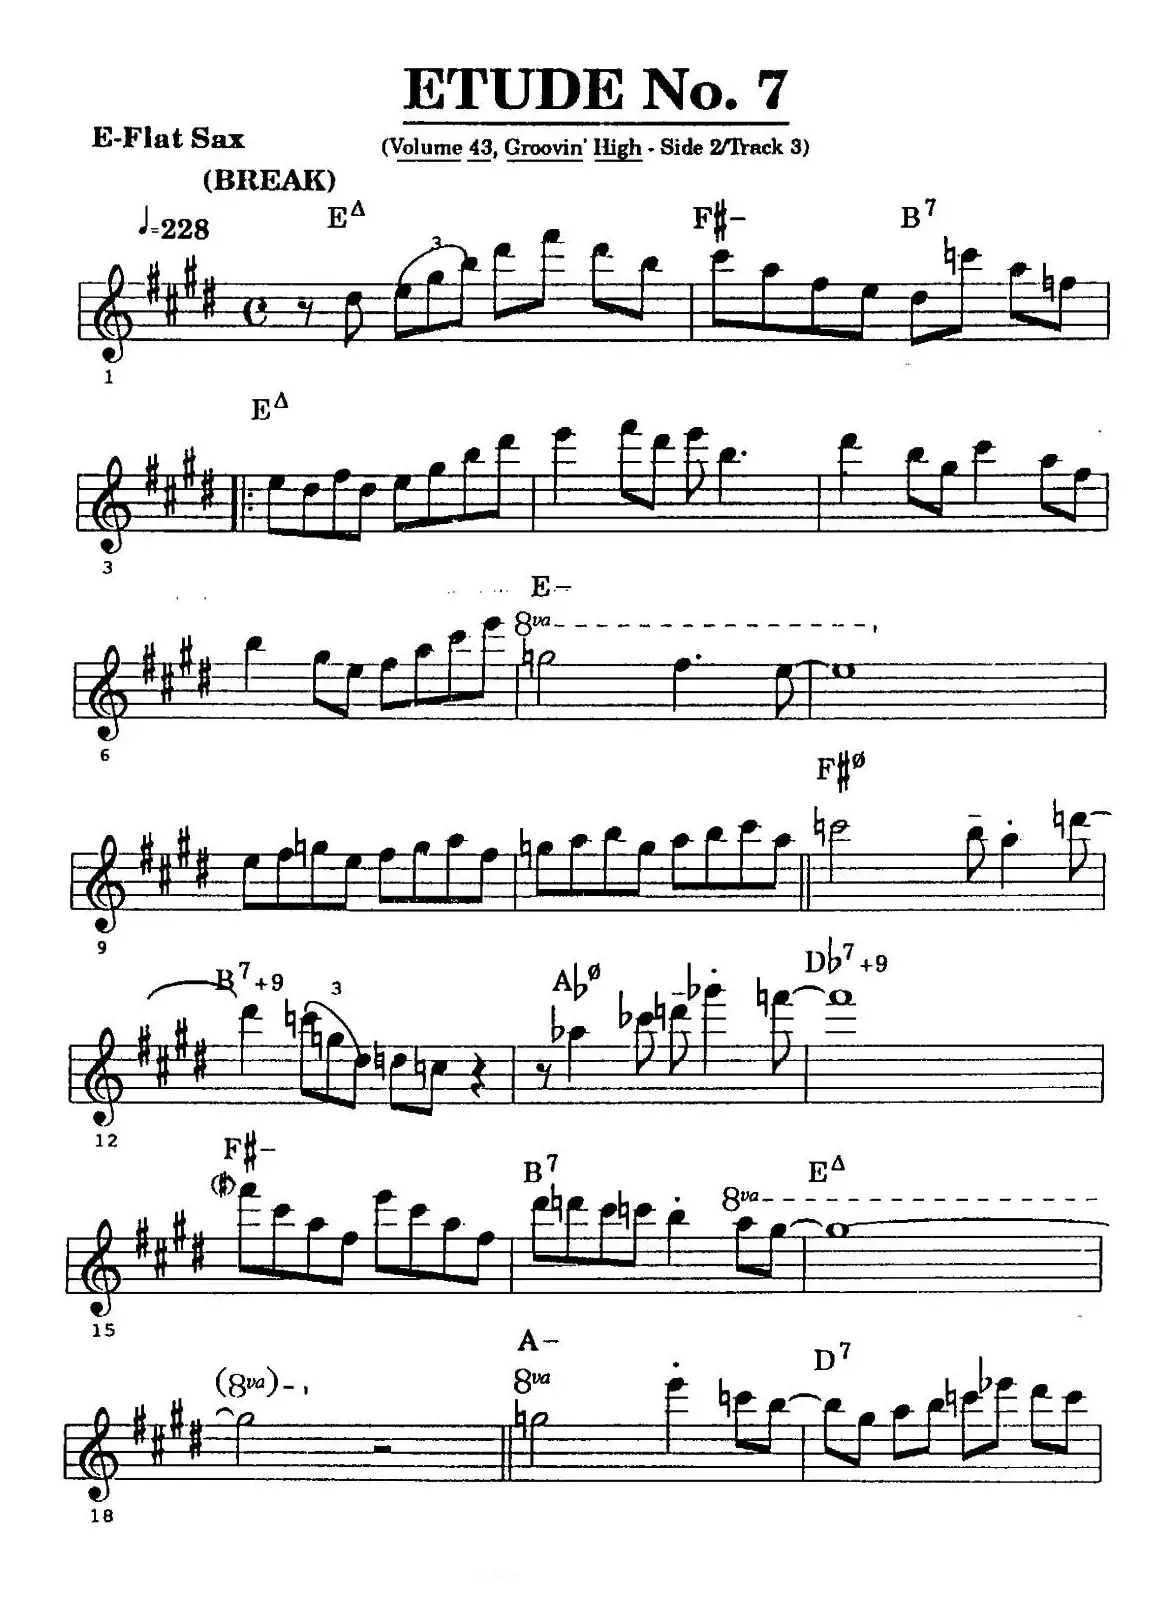 爵士乐超吹练习曲（七）